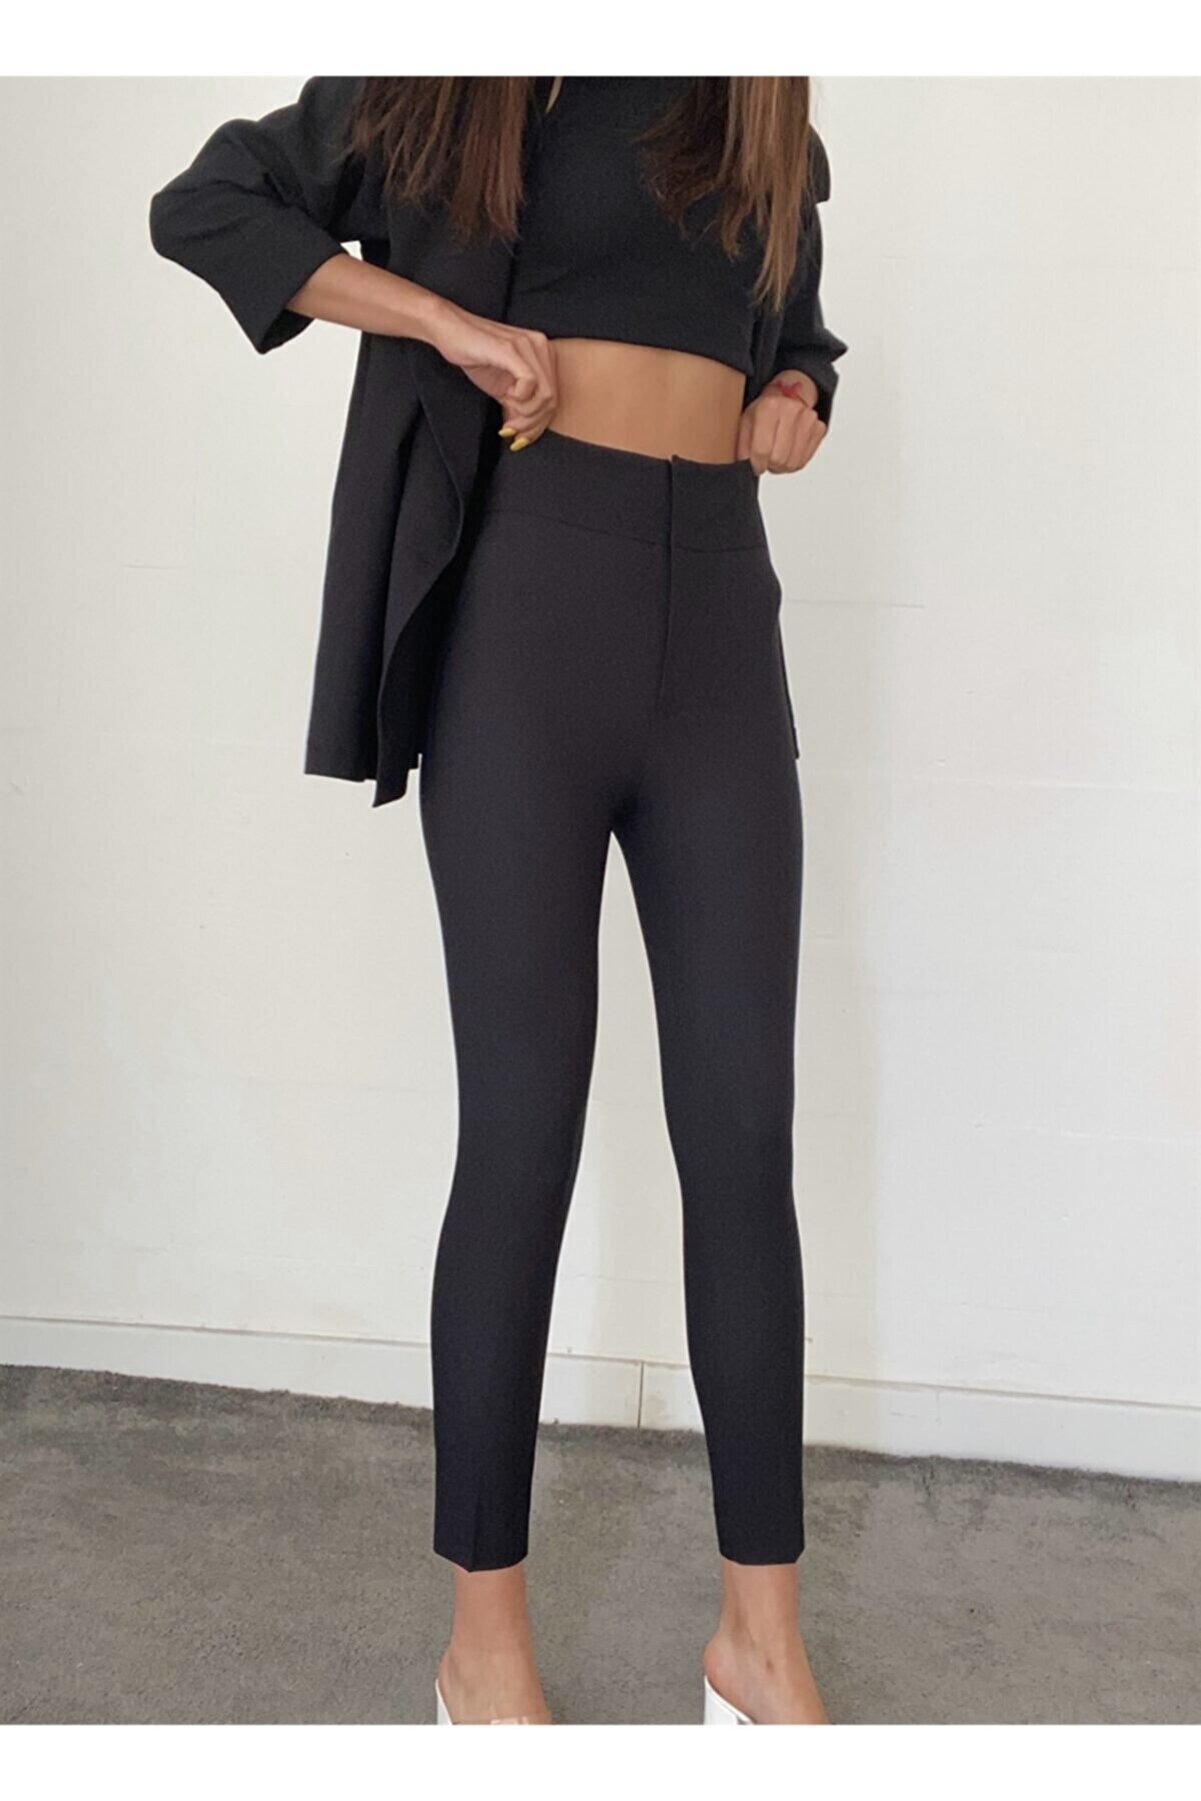 moneta boutique Kadın Siyah Ekstra Yüksek Bel Dar Paça Toparlayıcı Pantolon